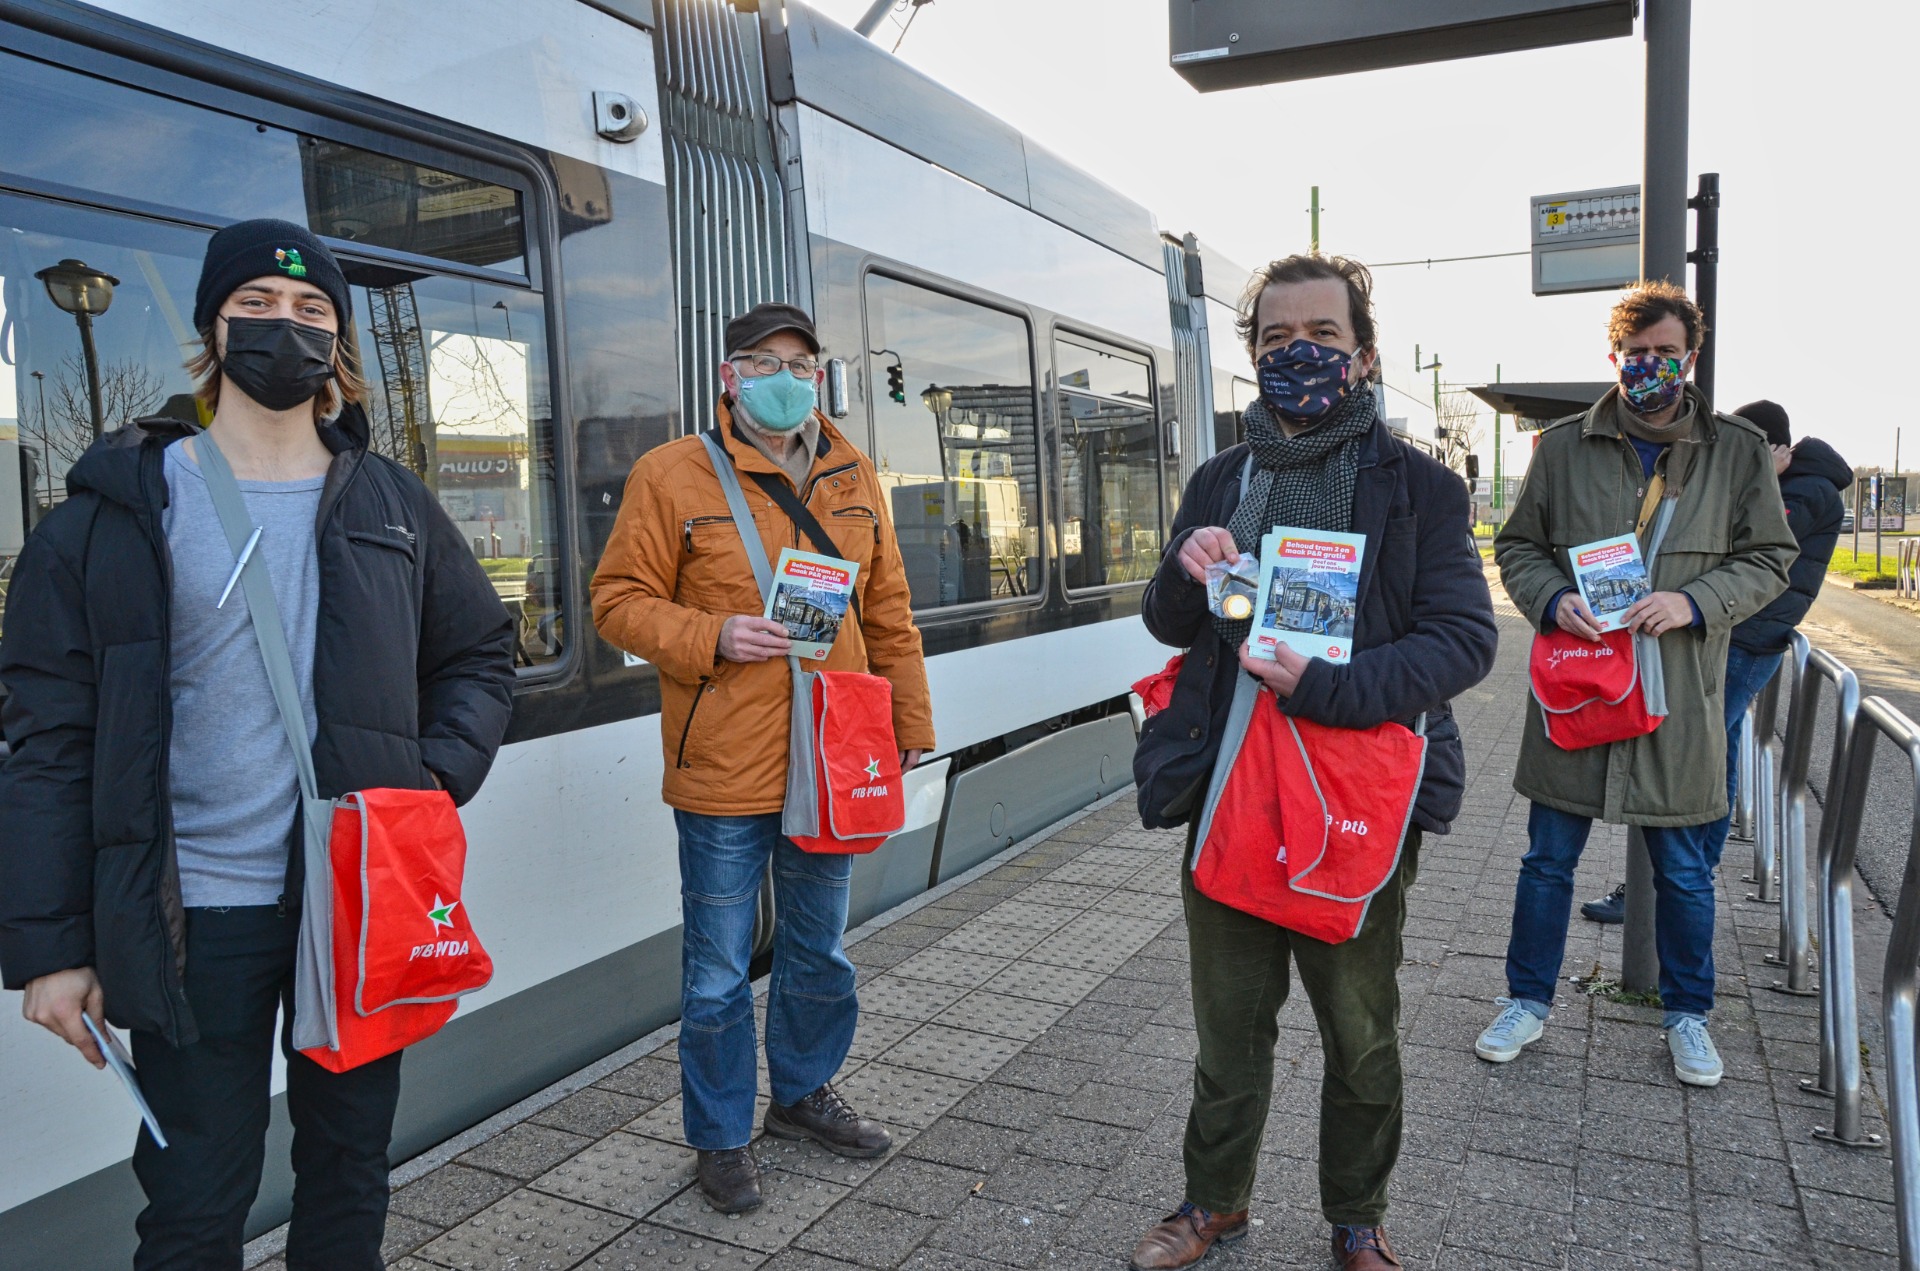 PVDA Merksem verdeelt chocolade munten voor gratis parkeertoren en behoud tram 2